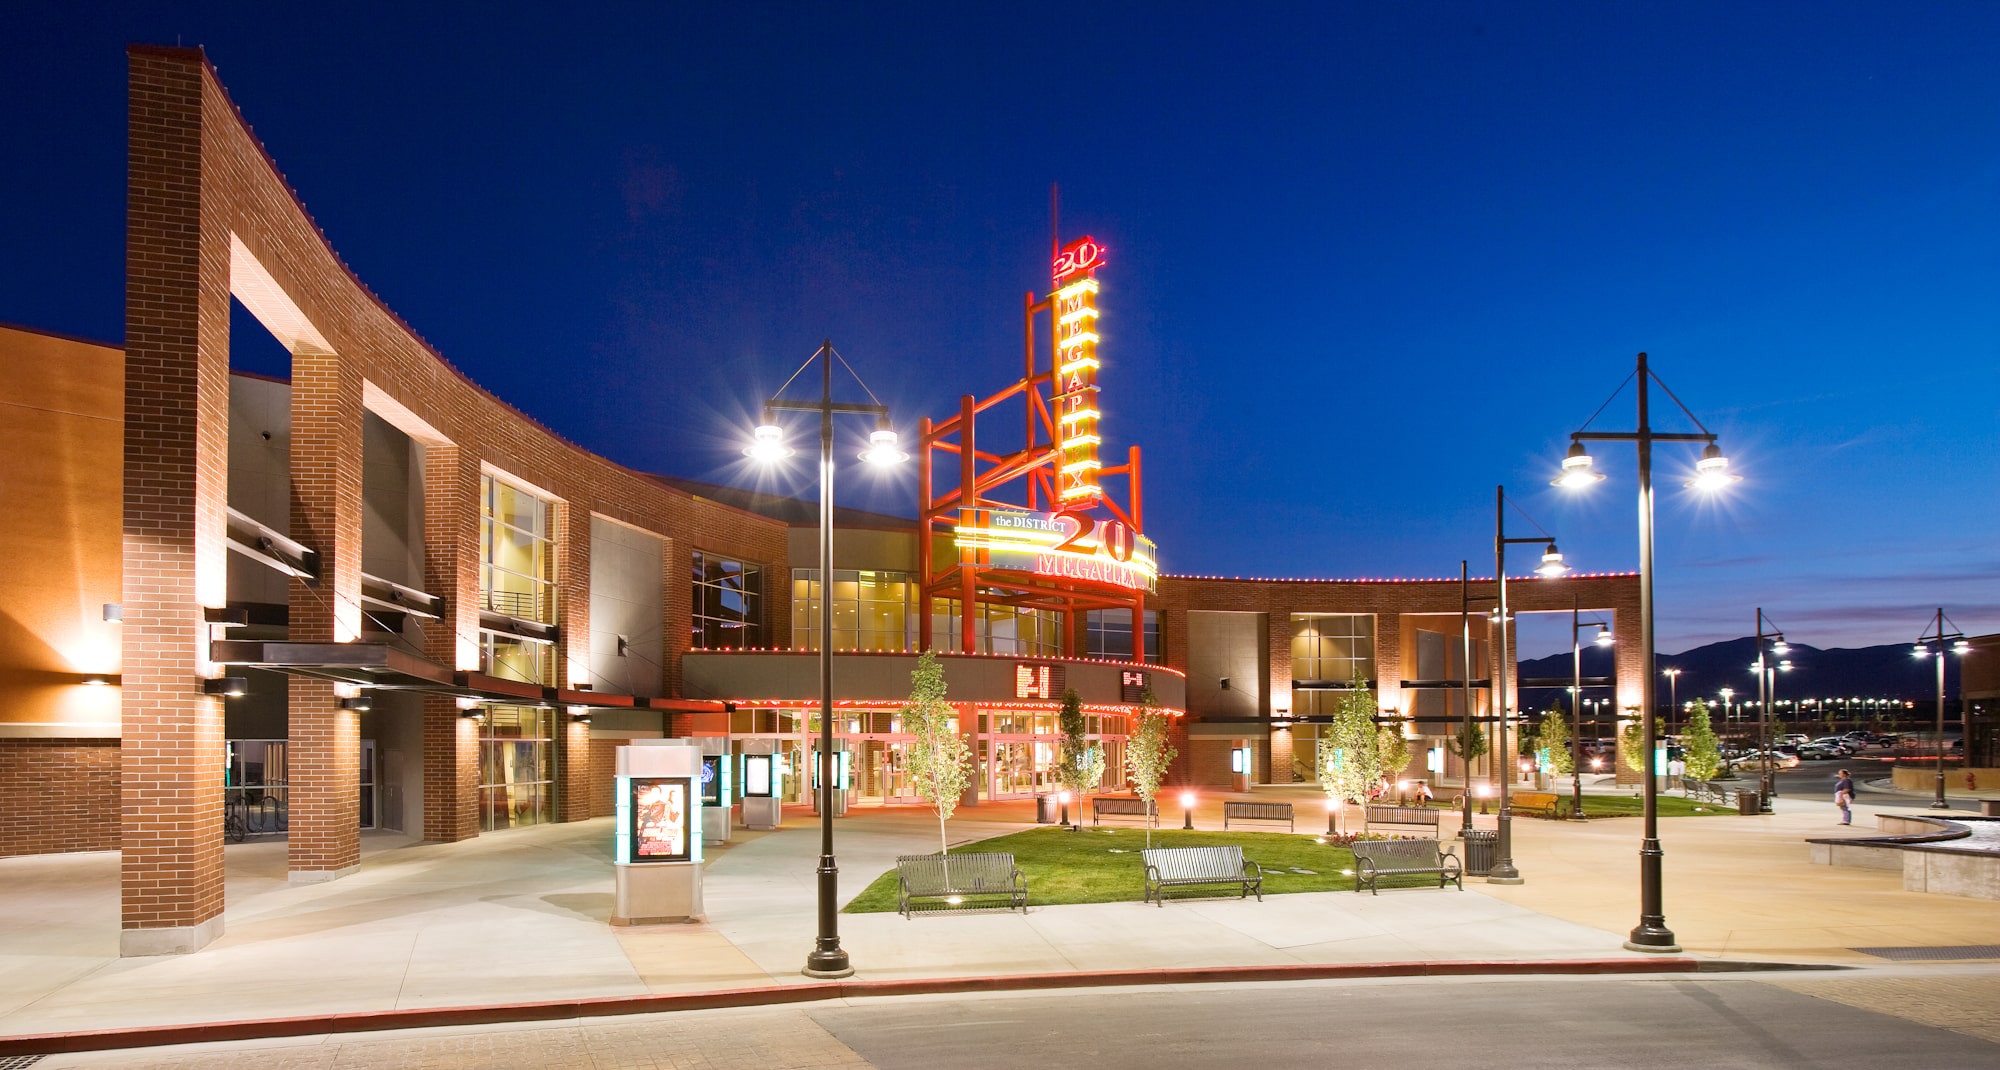 Exterior of The District at night, Megaplex 20 theatres